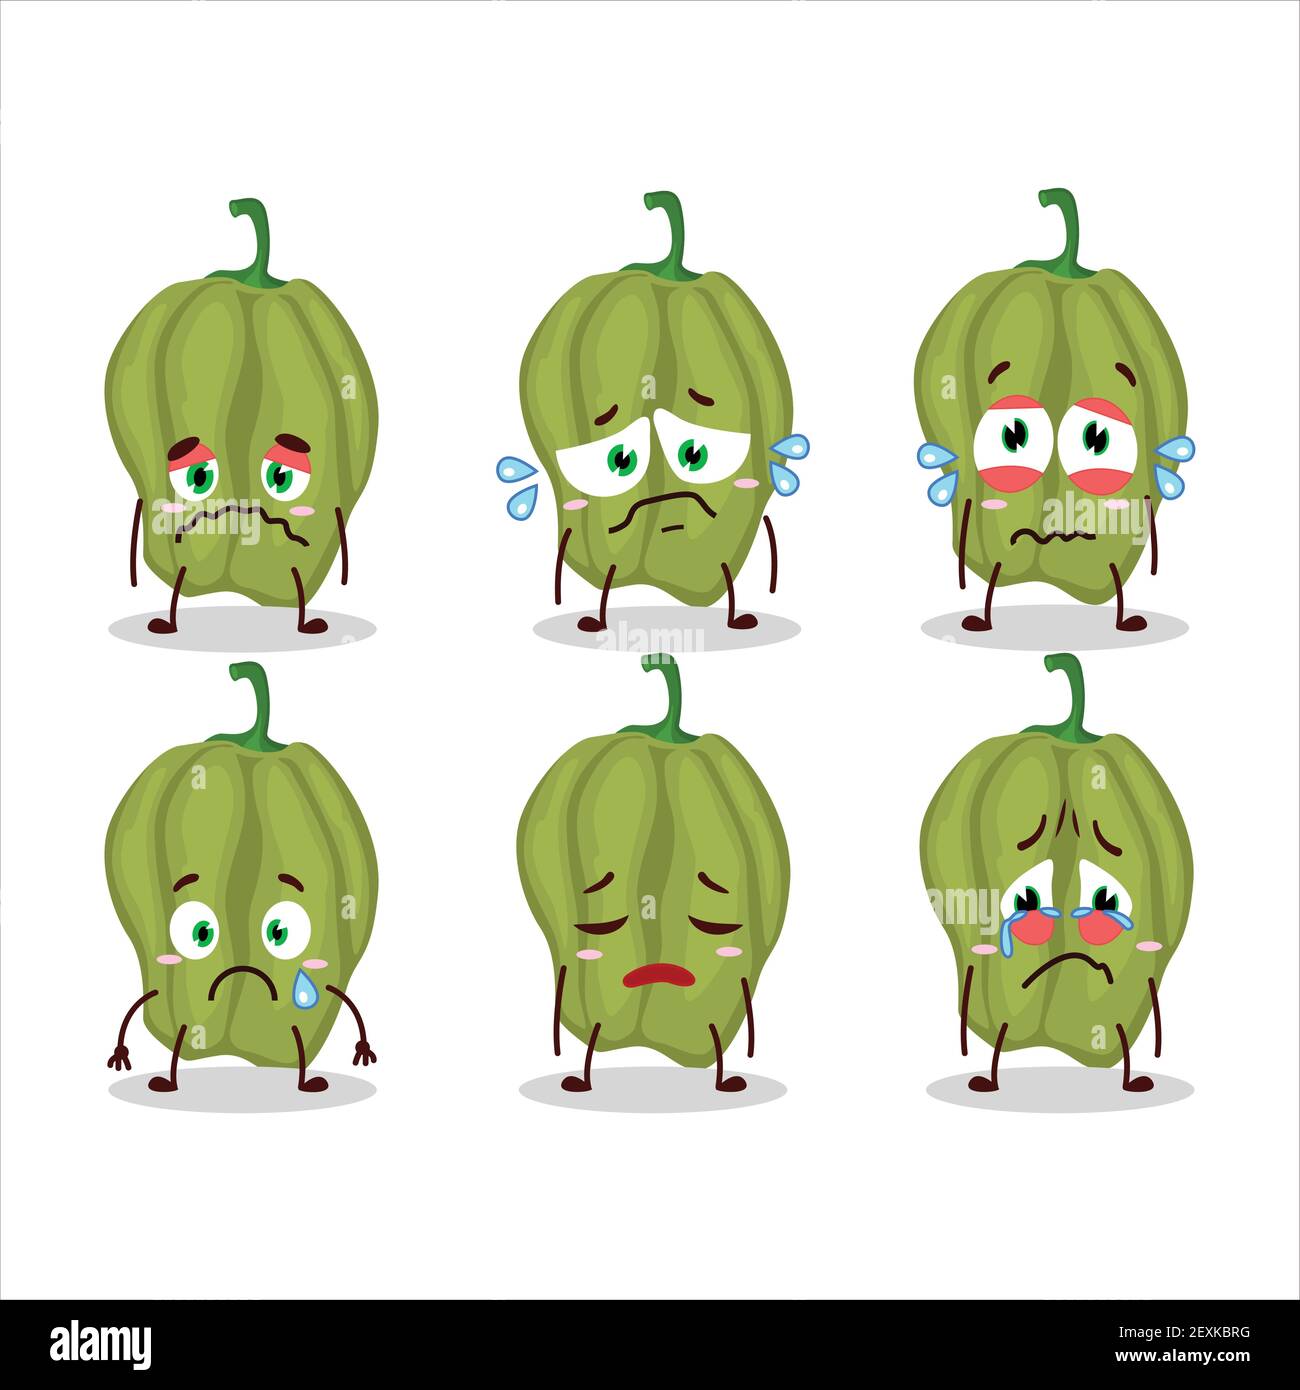 Nouveau personnage de dessin animé hananero vert avec une triste expression. Illustration vectorielle Illustration de Vecteur